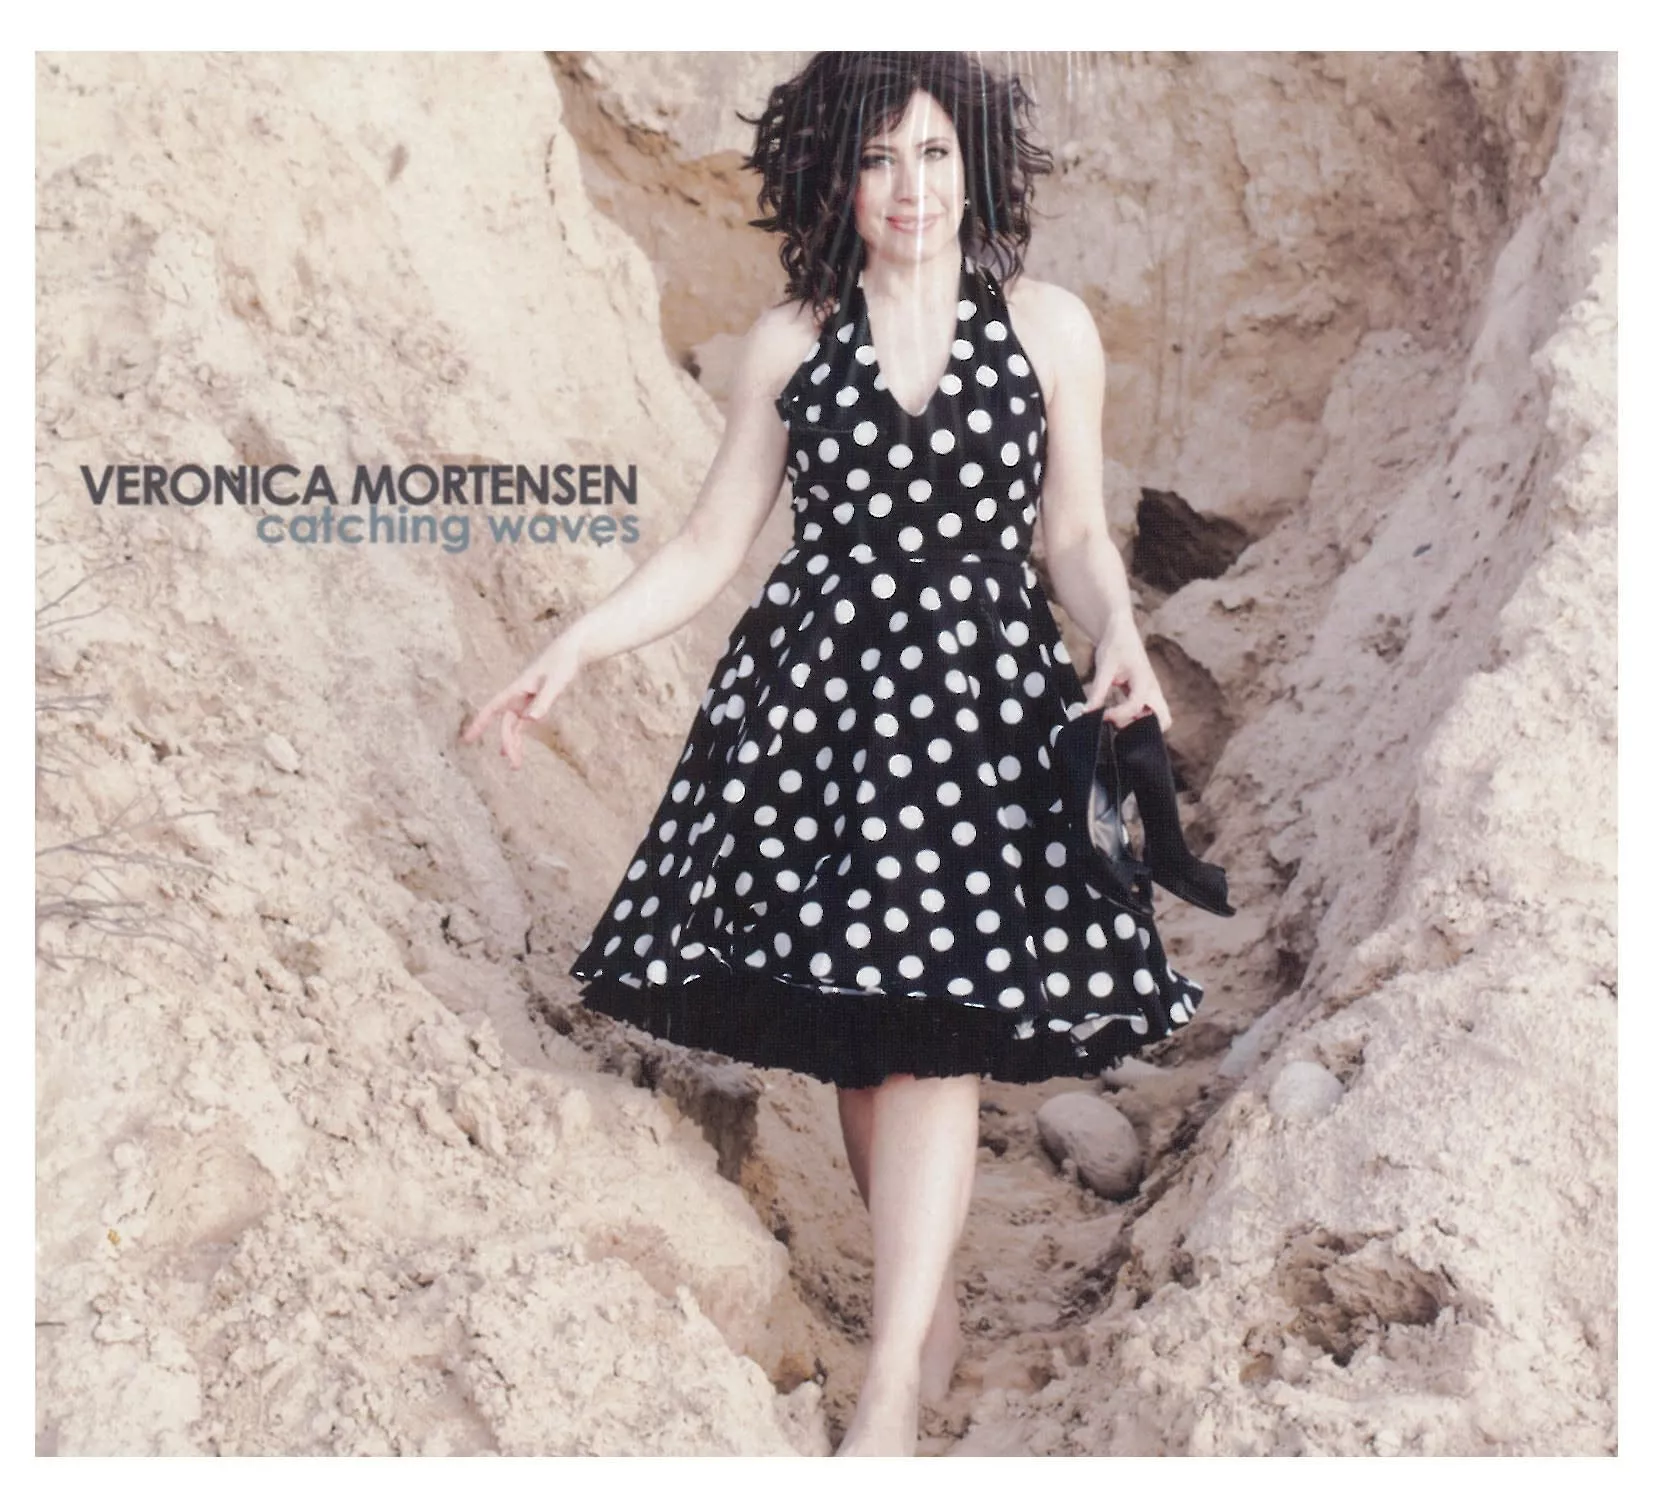 Catching Waves - Veronica Mortensen